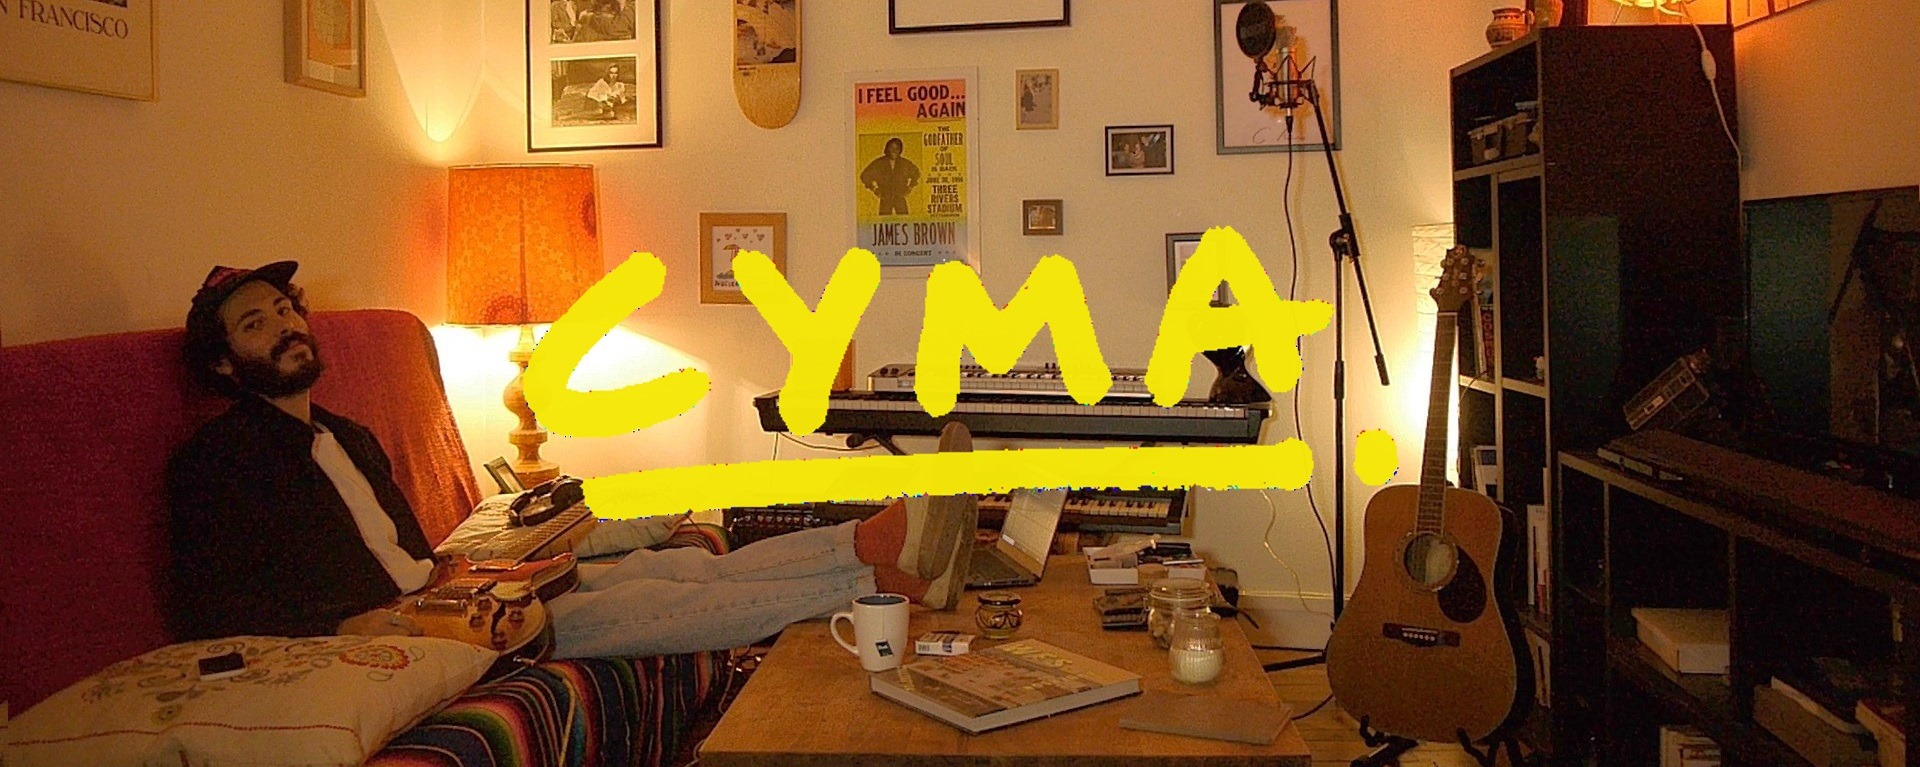 Lire la suite à propos de l’article Cyma, le nouveau talent très « french touch » de la scène musicale française.